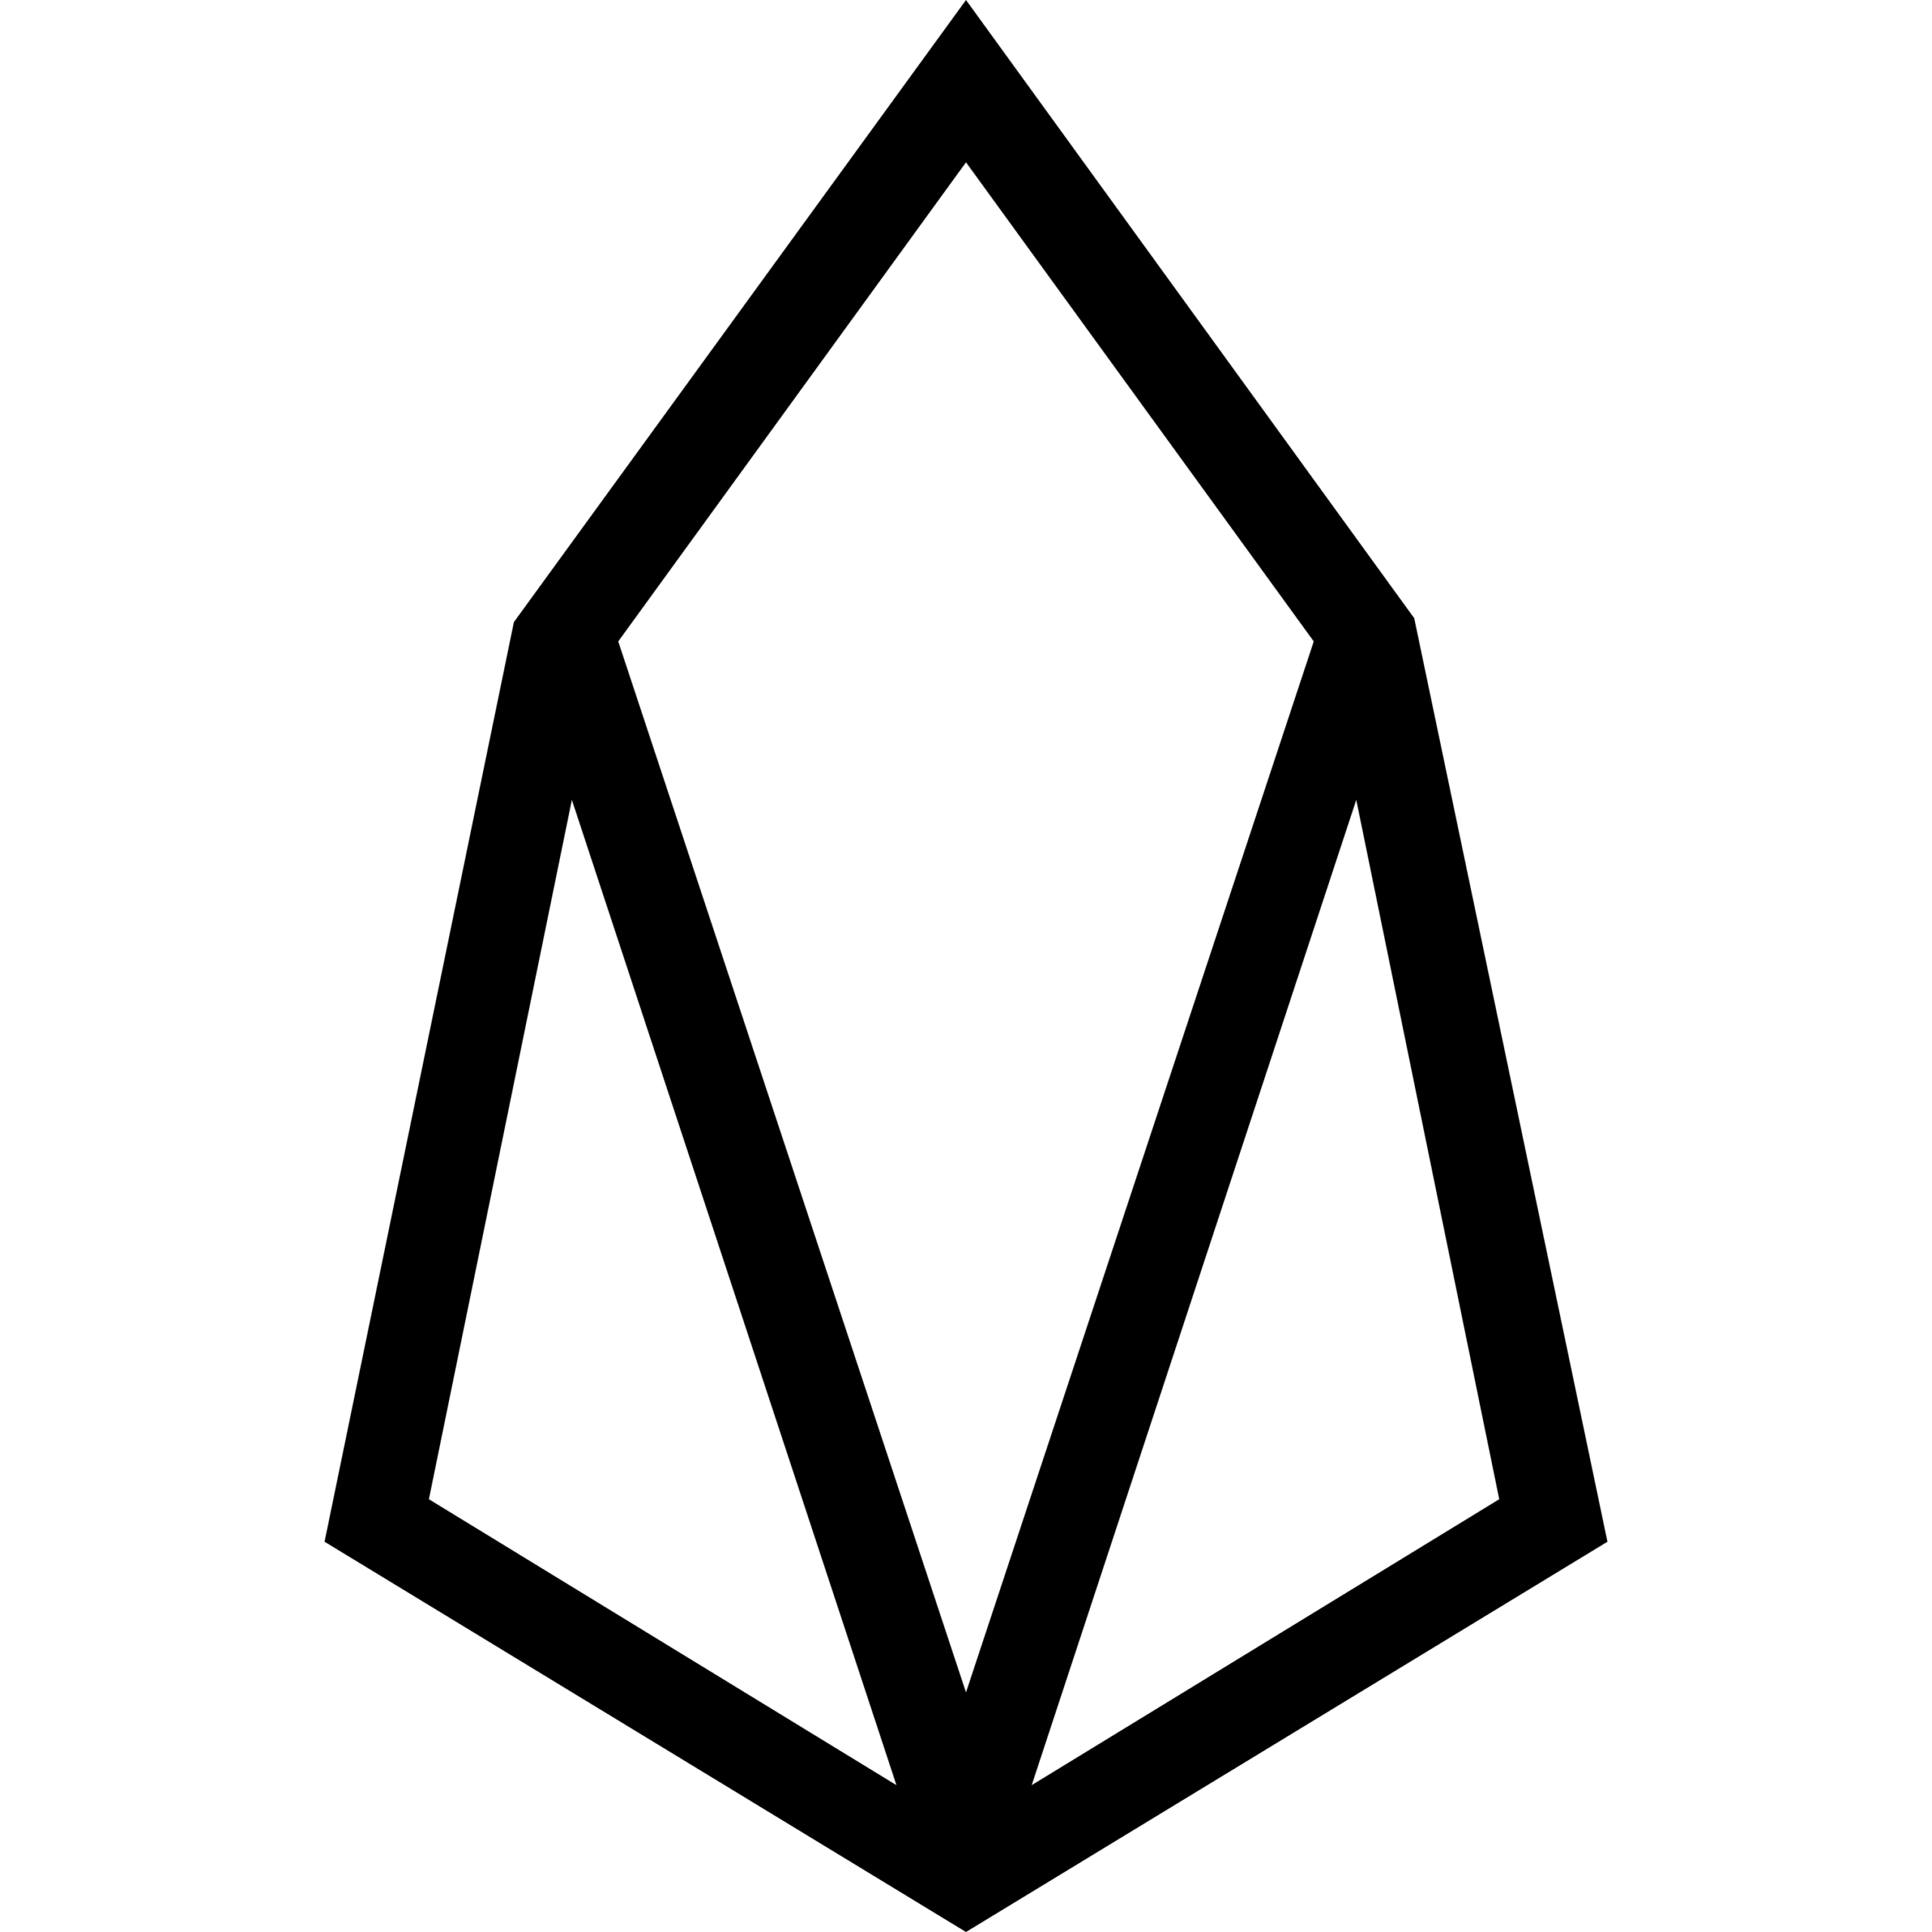 EOS-Logo